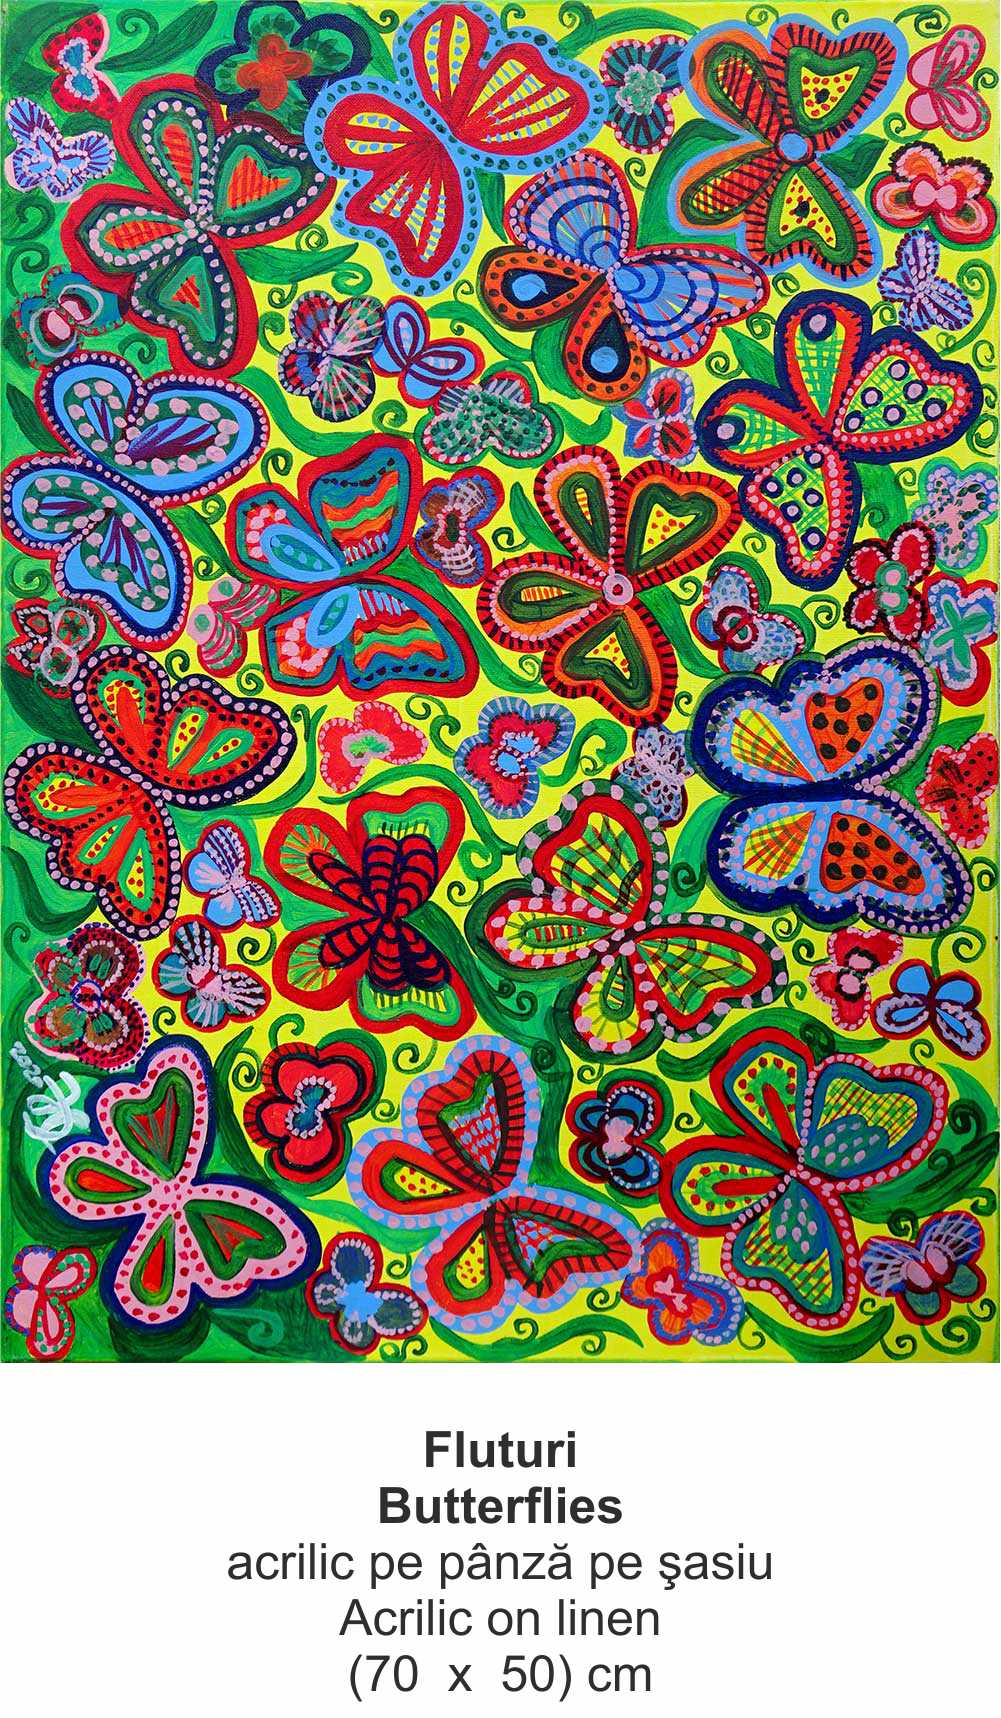 „Fluturi” („Butterflies ”) - acrilic pe pânză pe şasiu (Acrilic on linen) - (70  x  50) cm - img 29